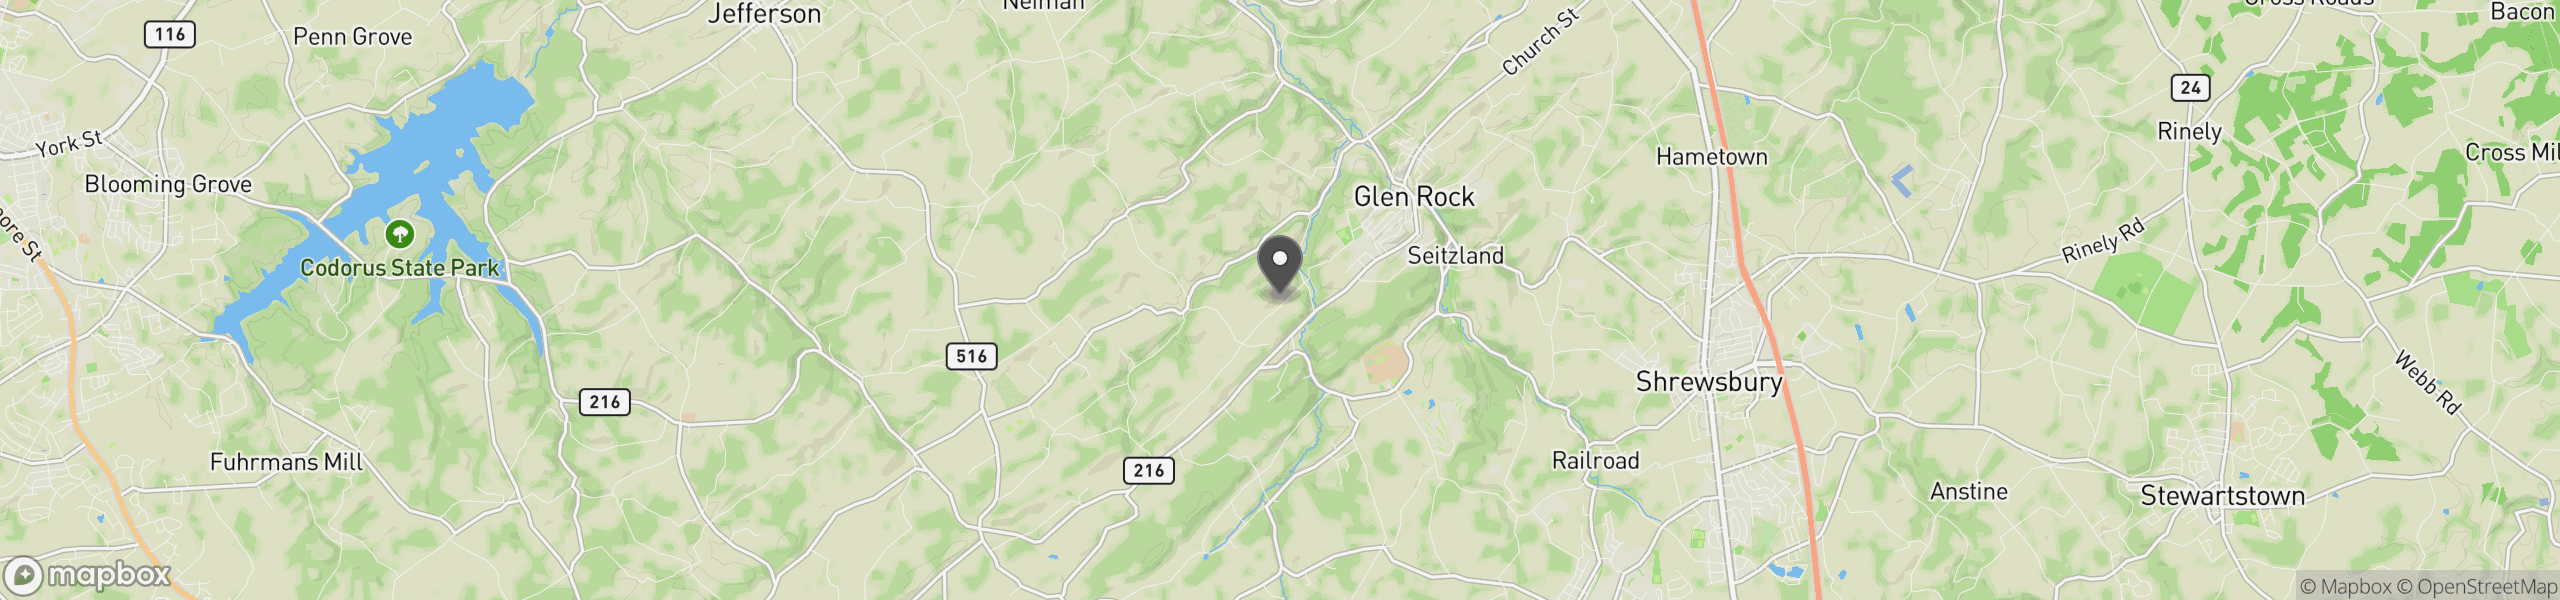 Glen Rock, PA